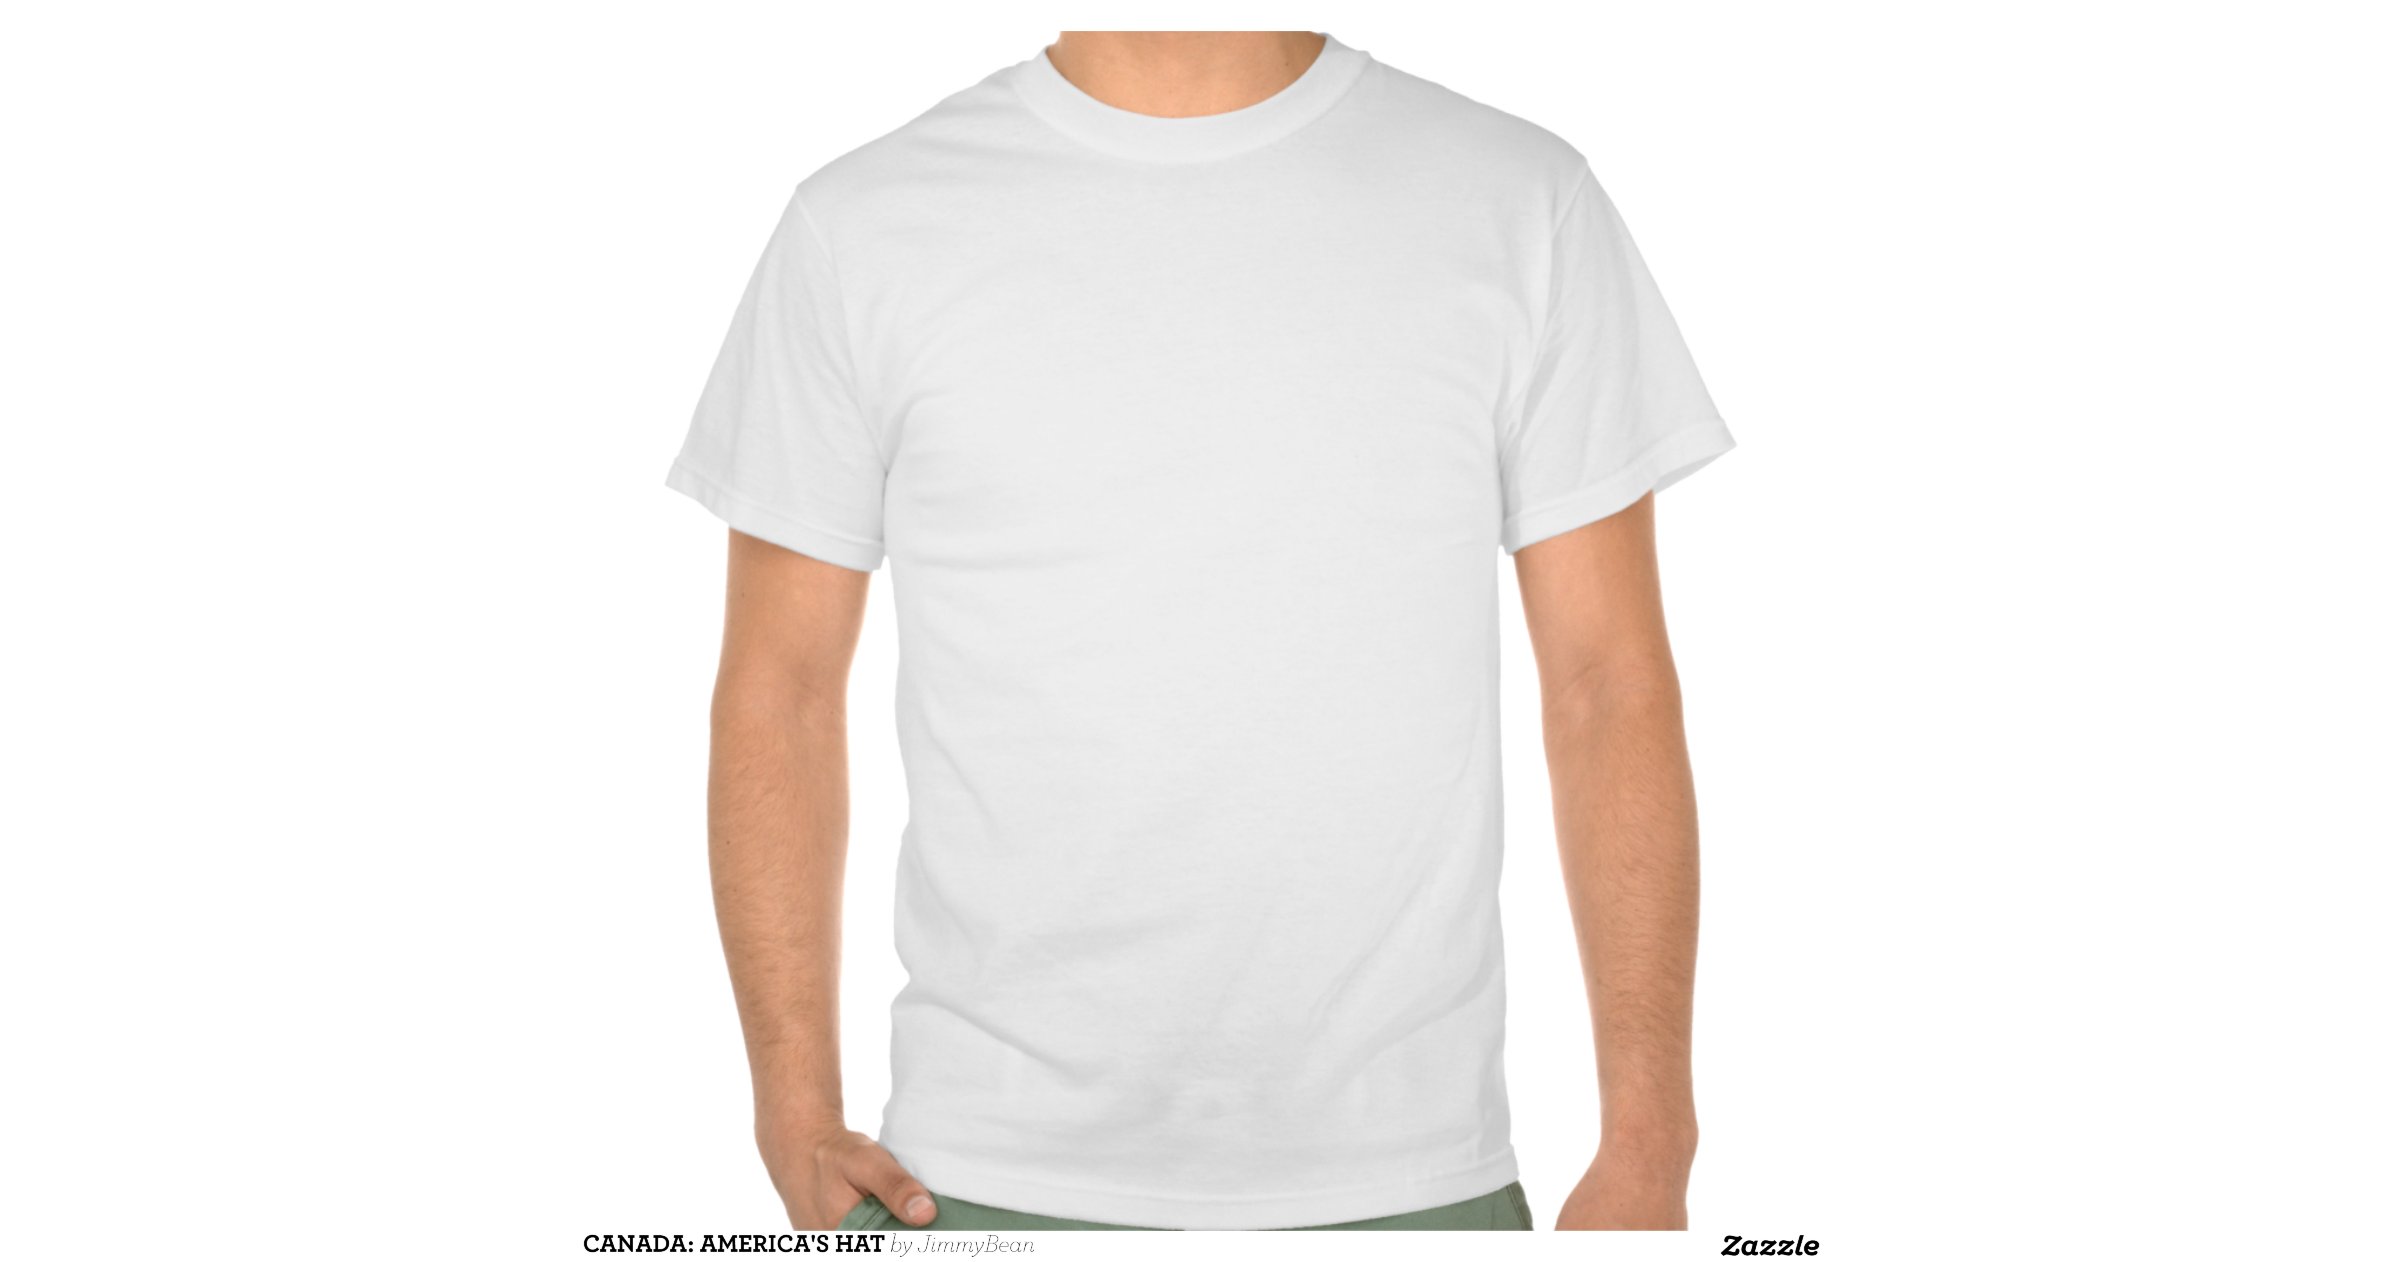 Canada Americas Hat T Shirt R988ae274a6df446da8d412e628624faa 804gy 1200 View Padding [0